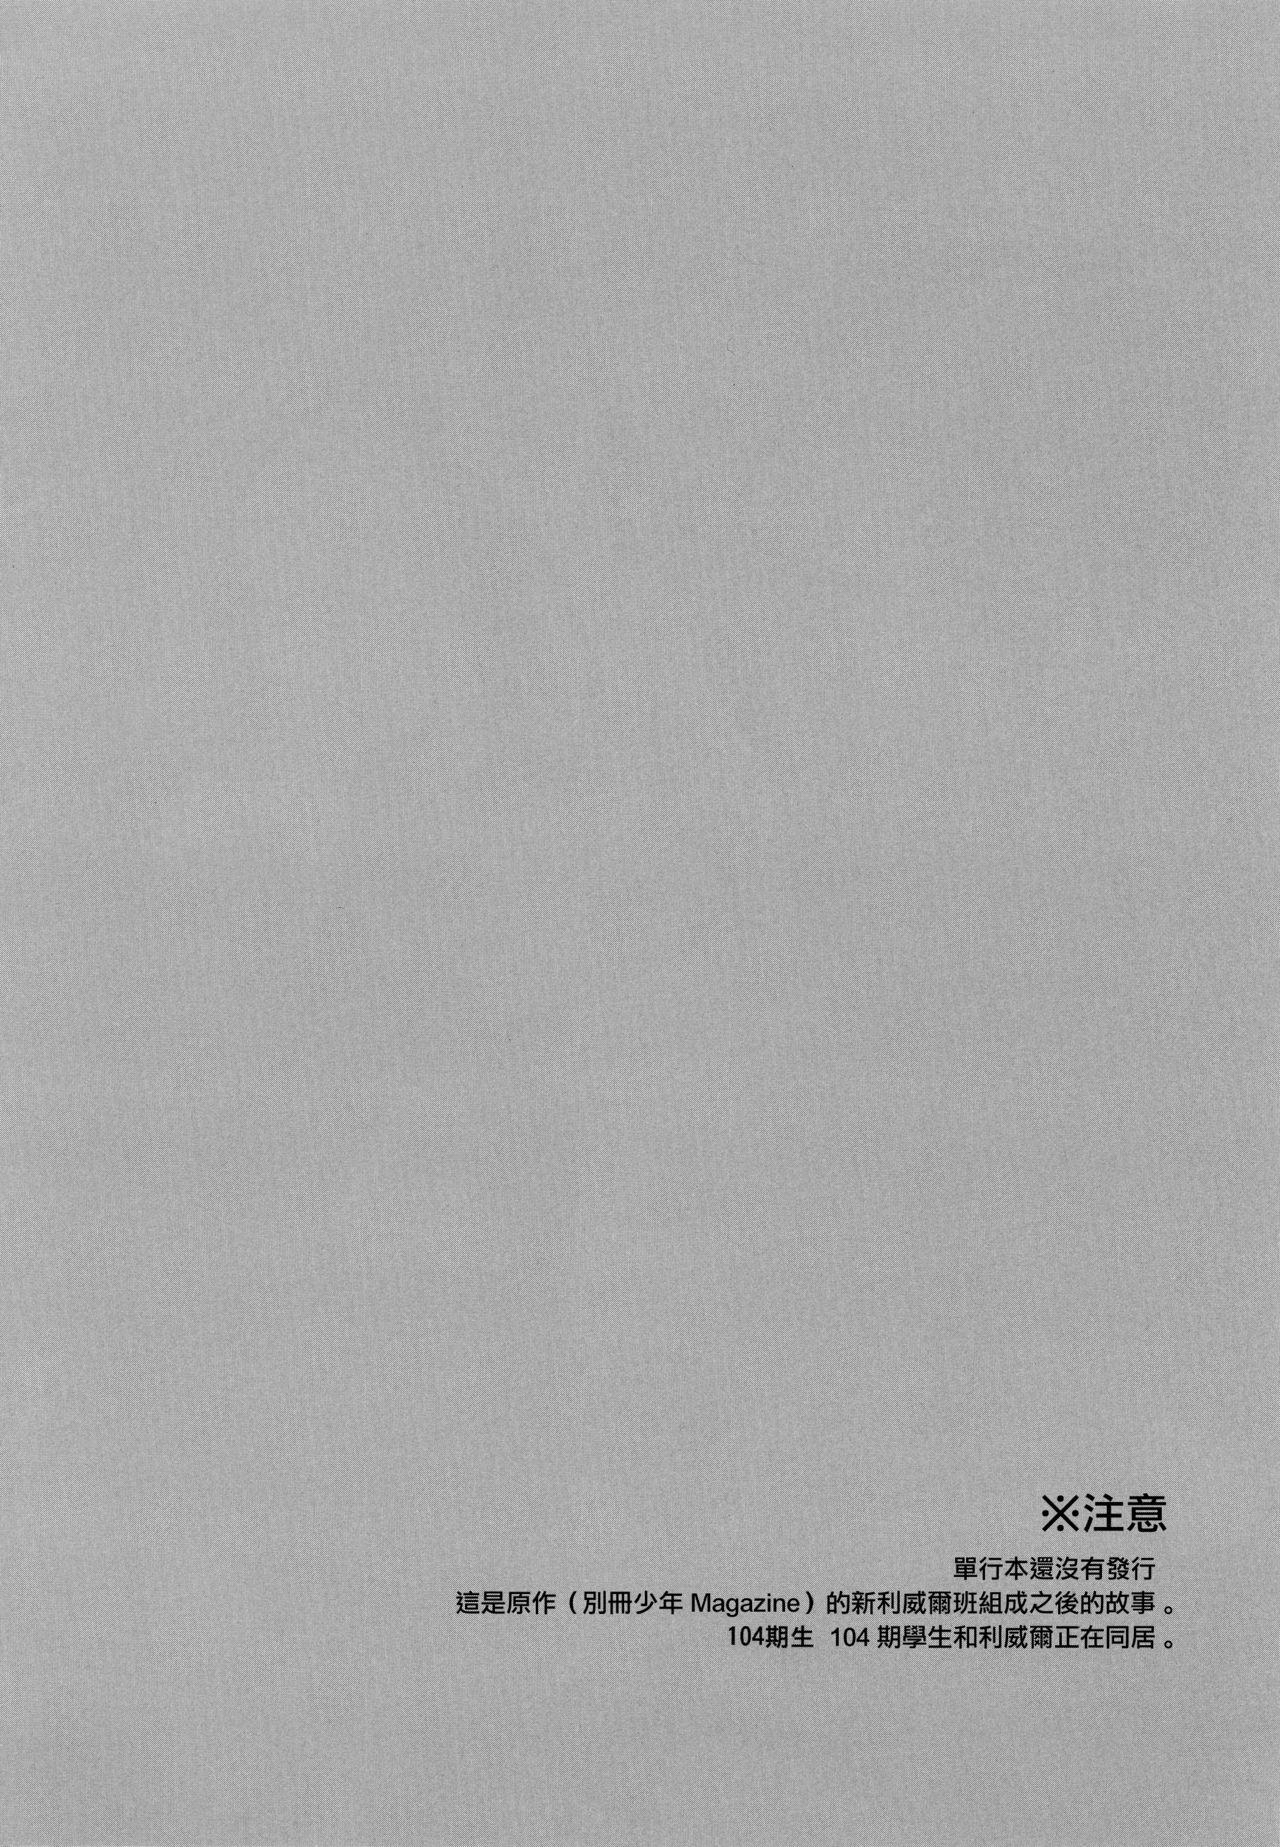 Colegiala Shinpei no Dokusen yoku ga tsuyo sugite komaru. - Shingeki no kyojin Dominant - Page 4